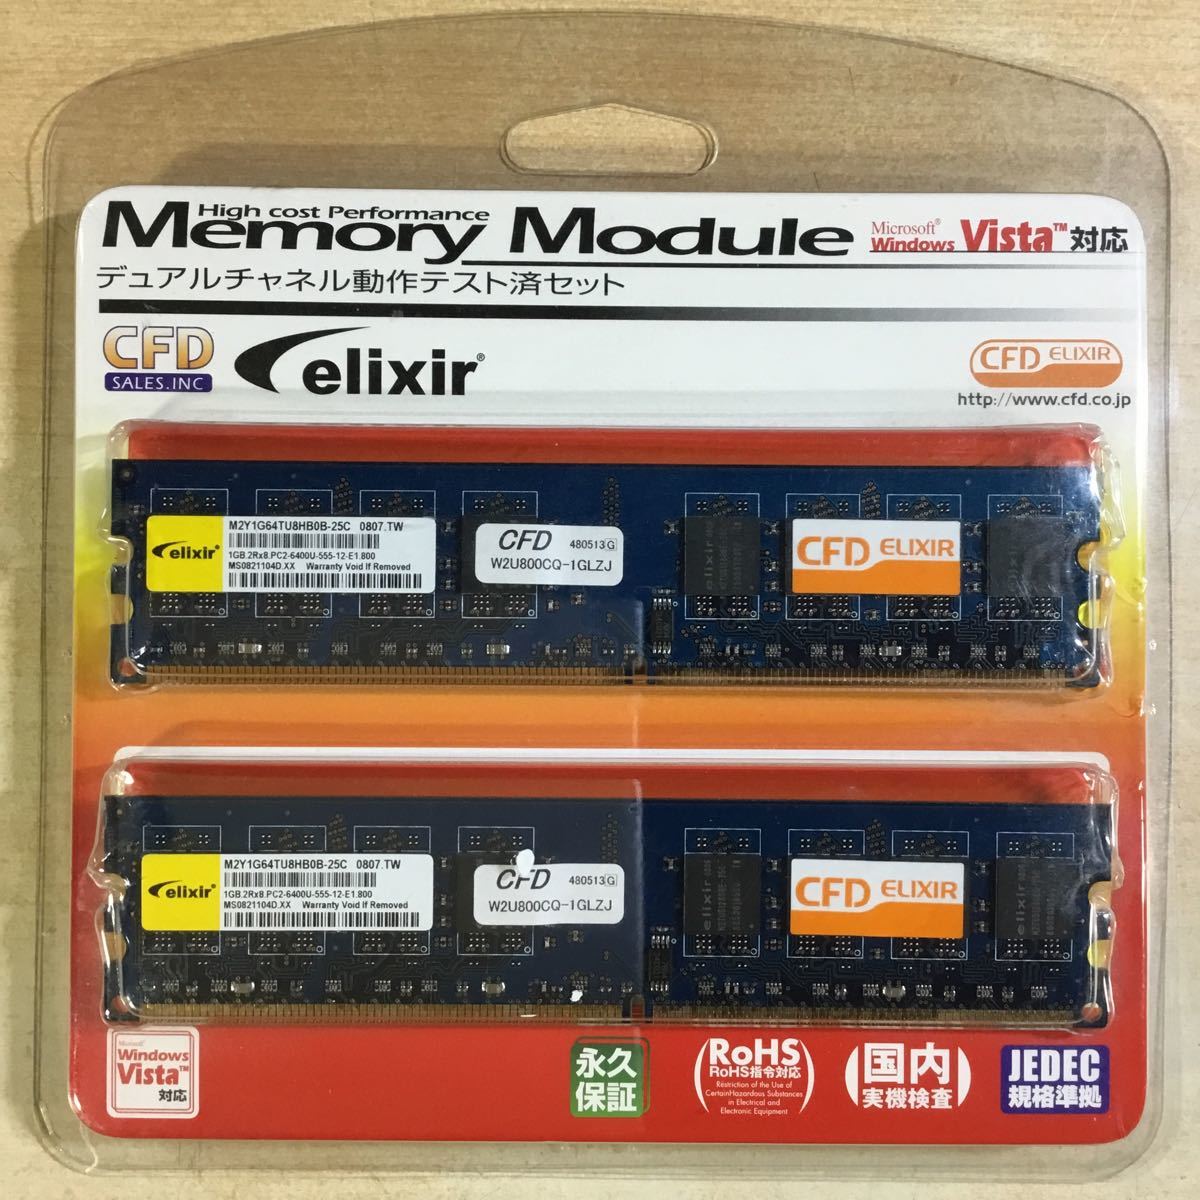 【送料無料】(122275B) ELIXIR メモリーモジュール DDR2 PC2-6400 CL5 1GB 2R×8 JEDEC デュアルチャネル動作テスト済セット 保管経年品_画像2